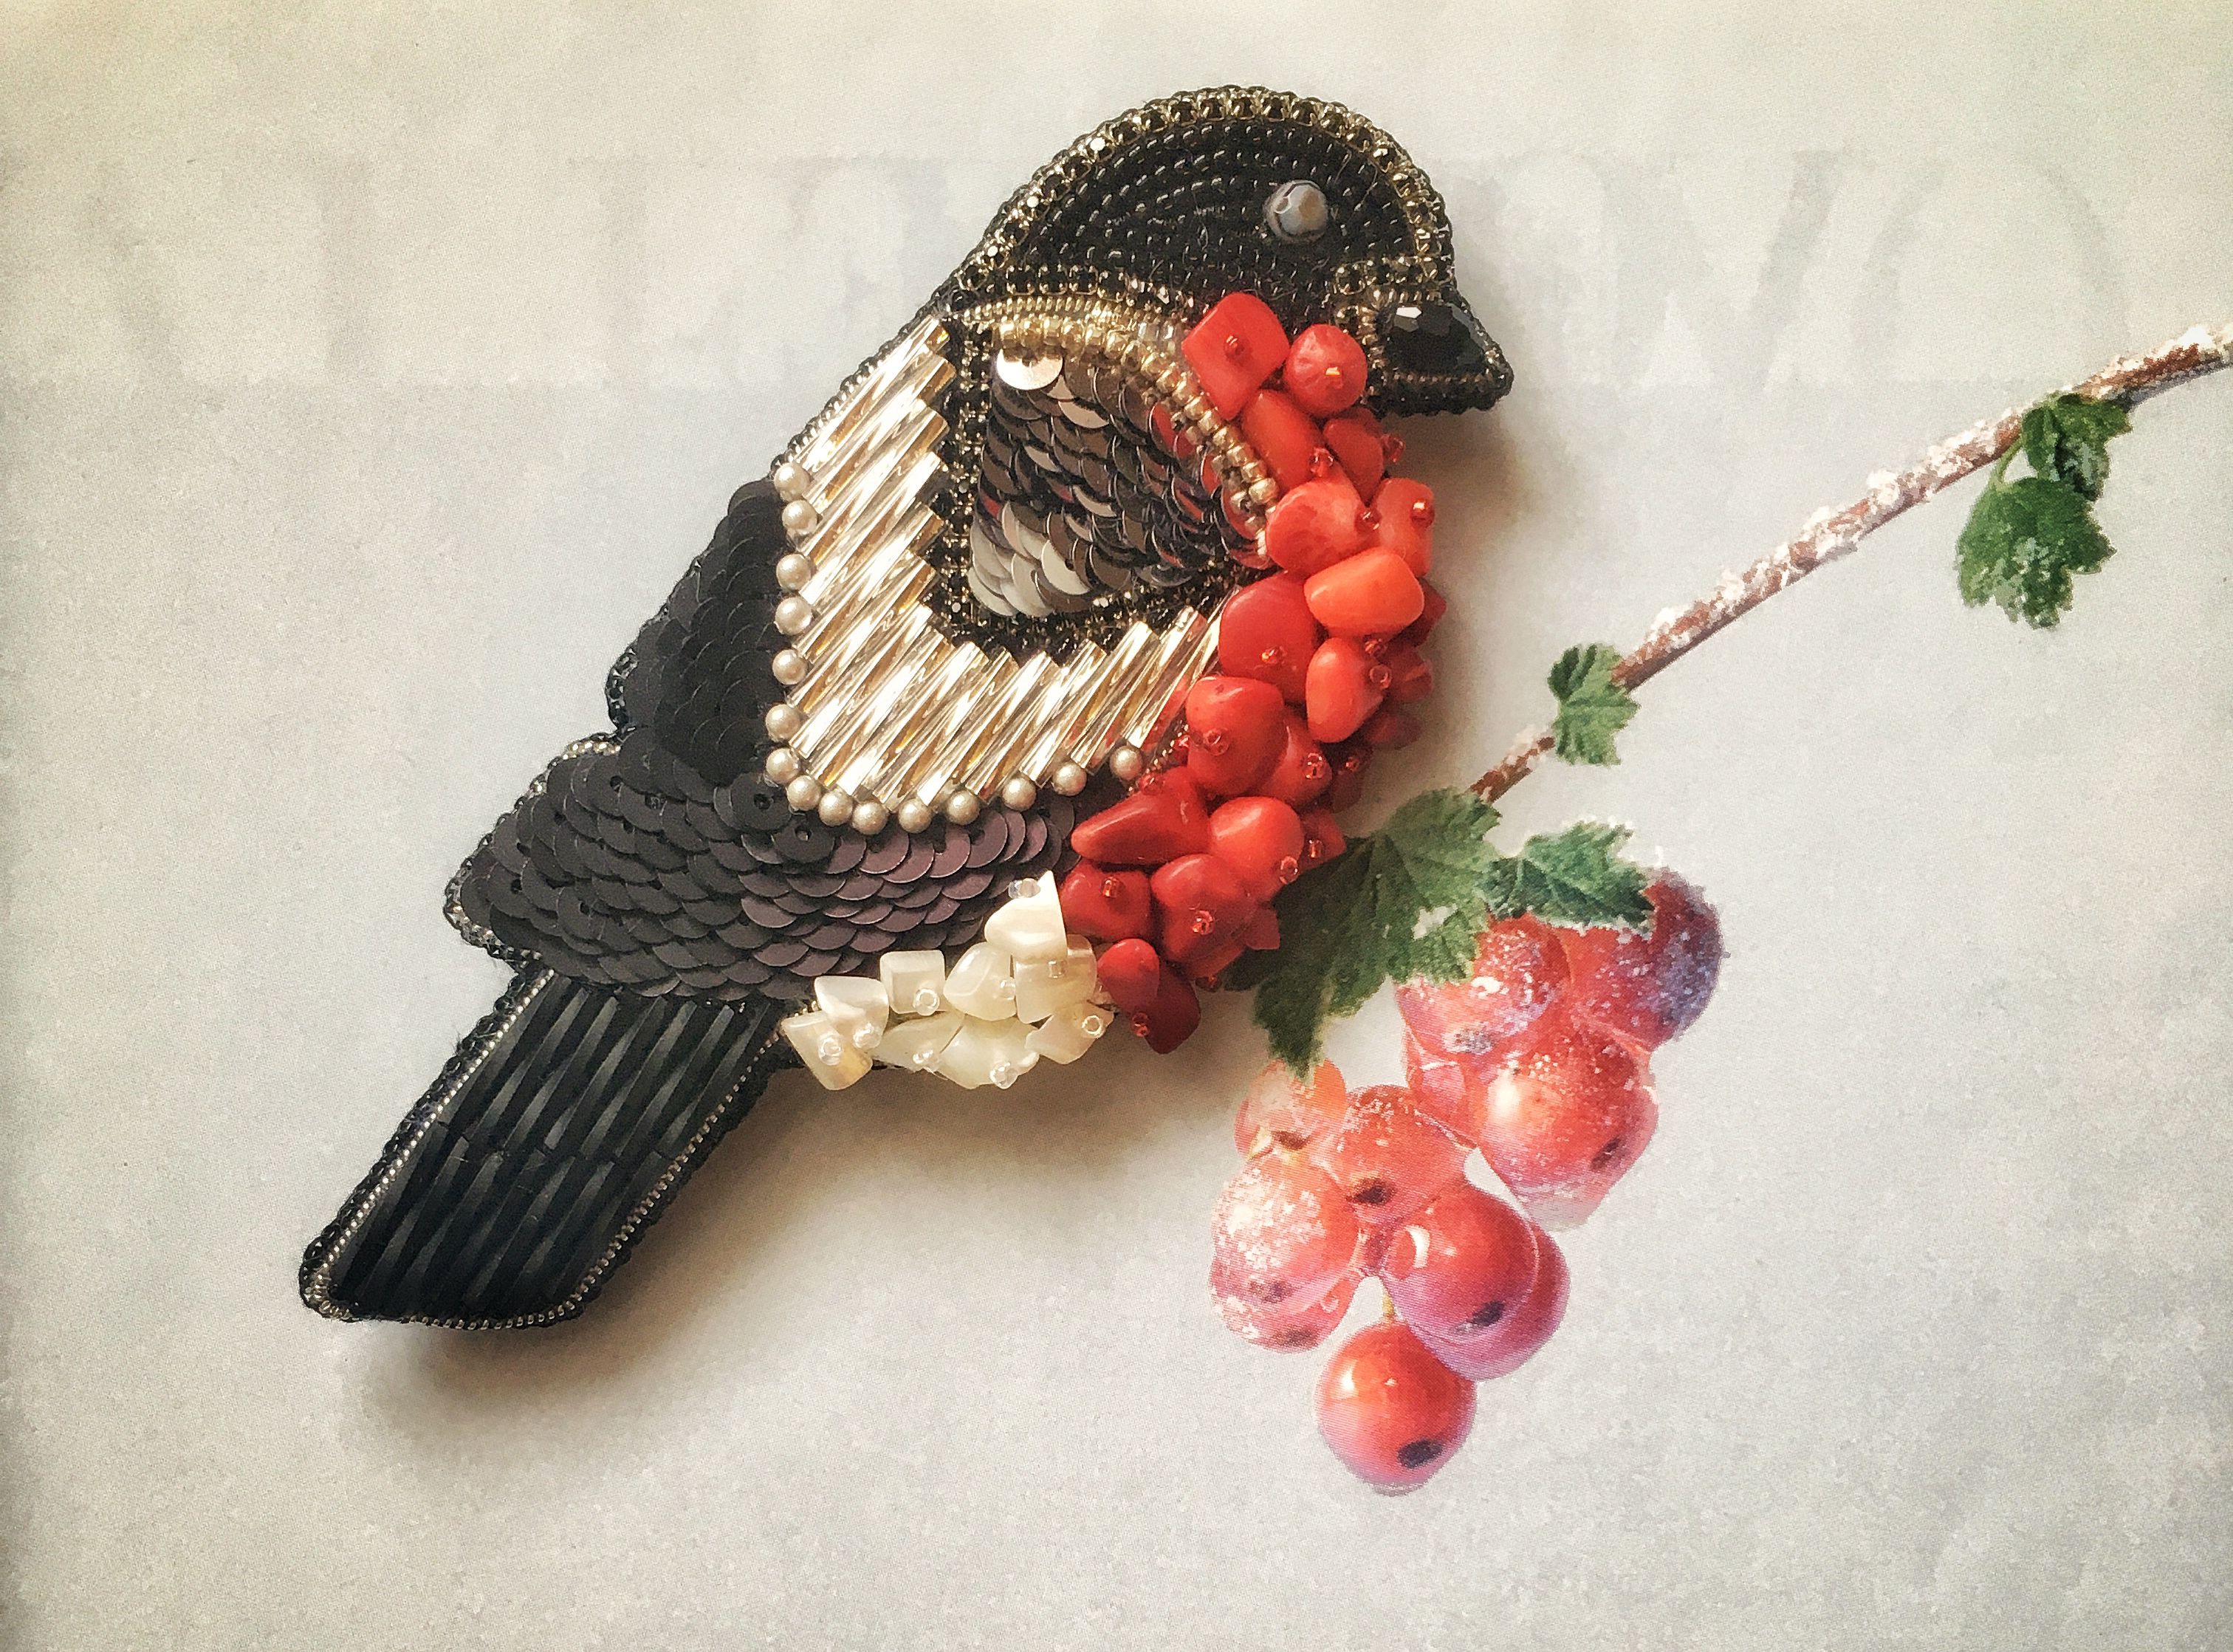 ожерелье птицы броши брошь украшение снегирь ручной работы бижутерия